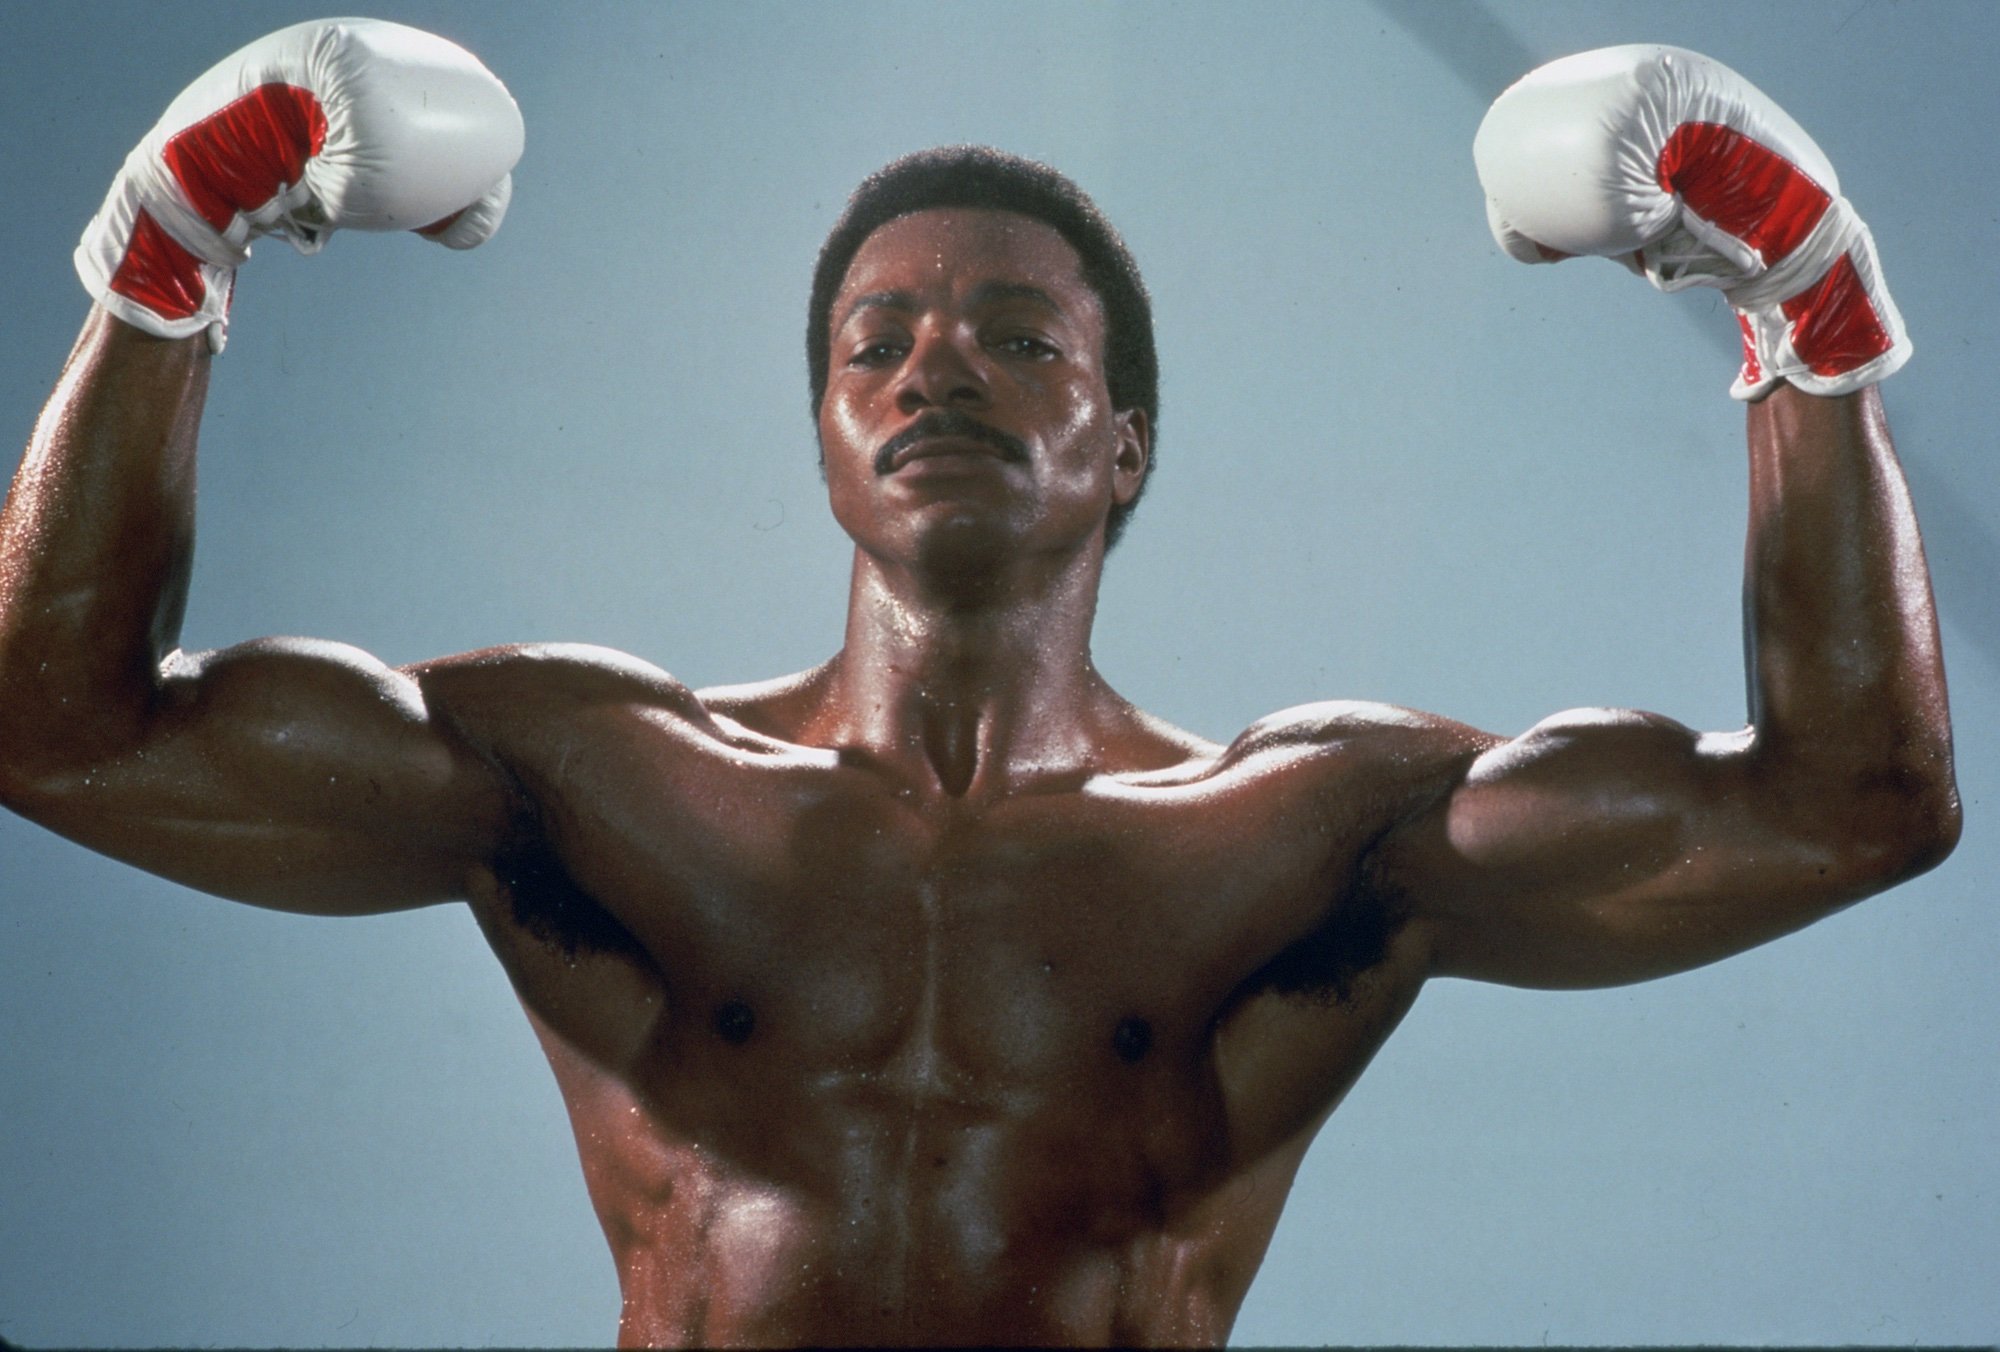 'Rocky IV': Apollo Creed flexes his muscles